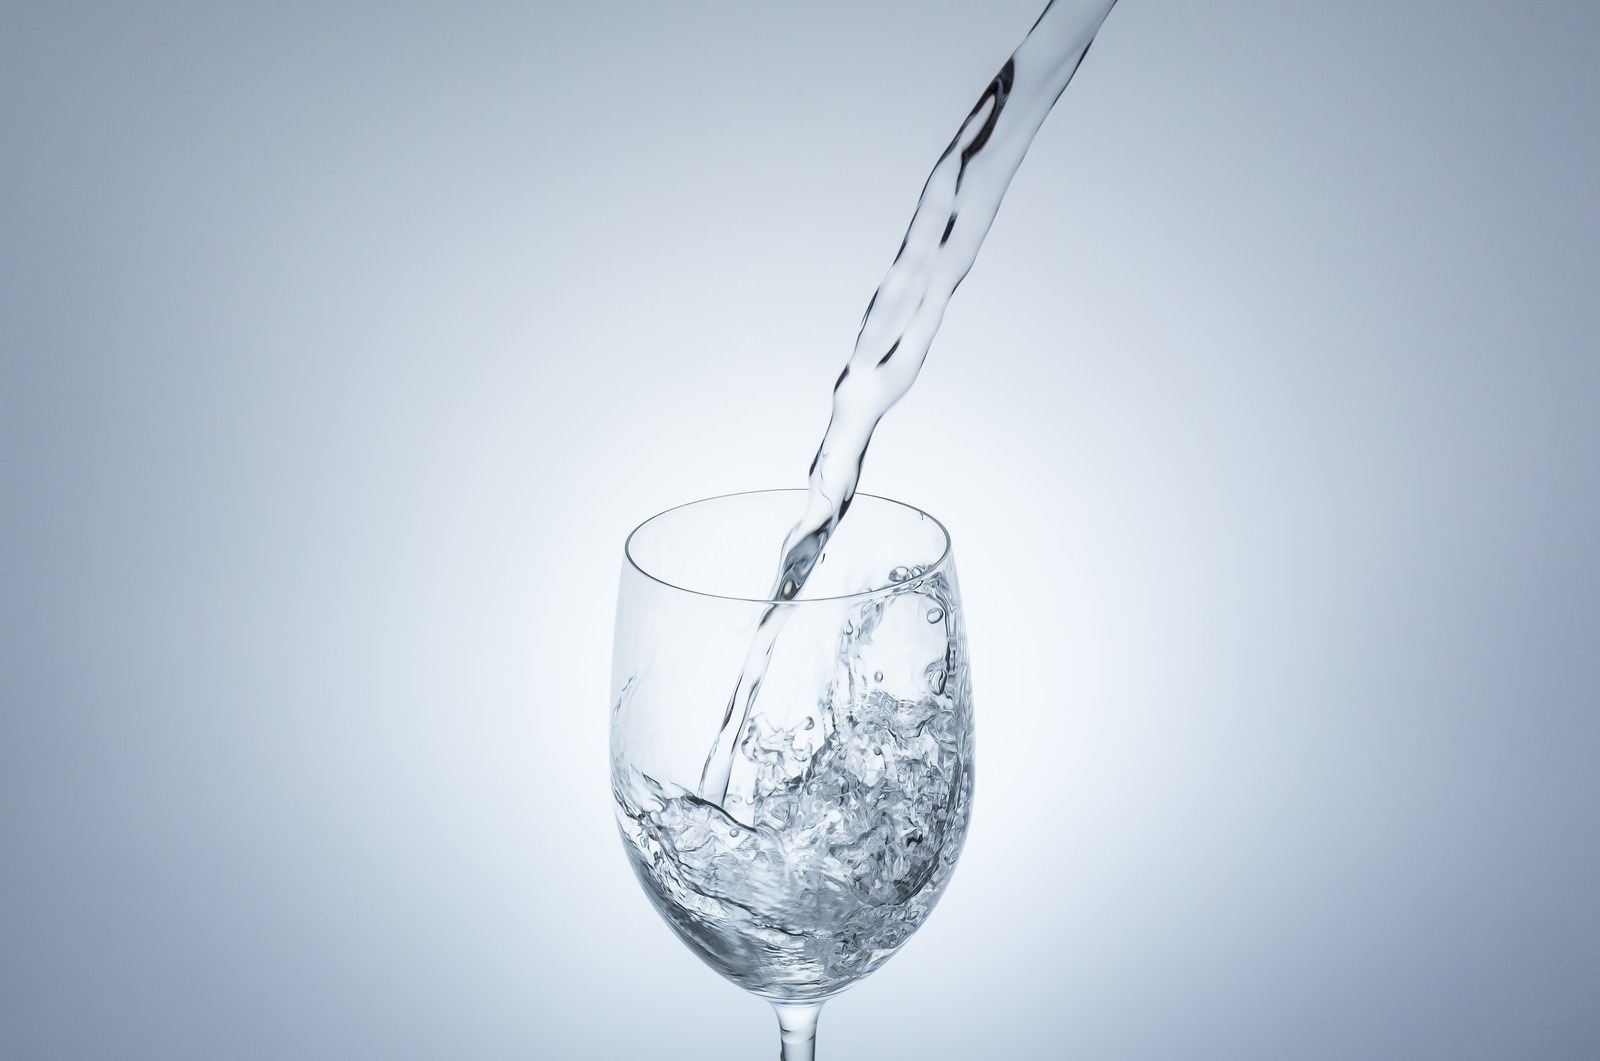 「グラスの中に注がれる水 | フリー素材のぱくたそ」の写真